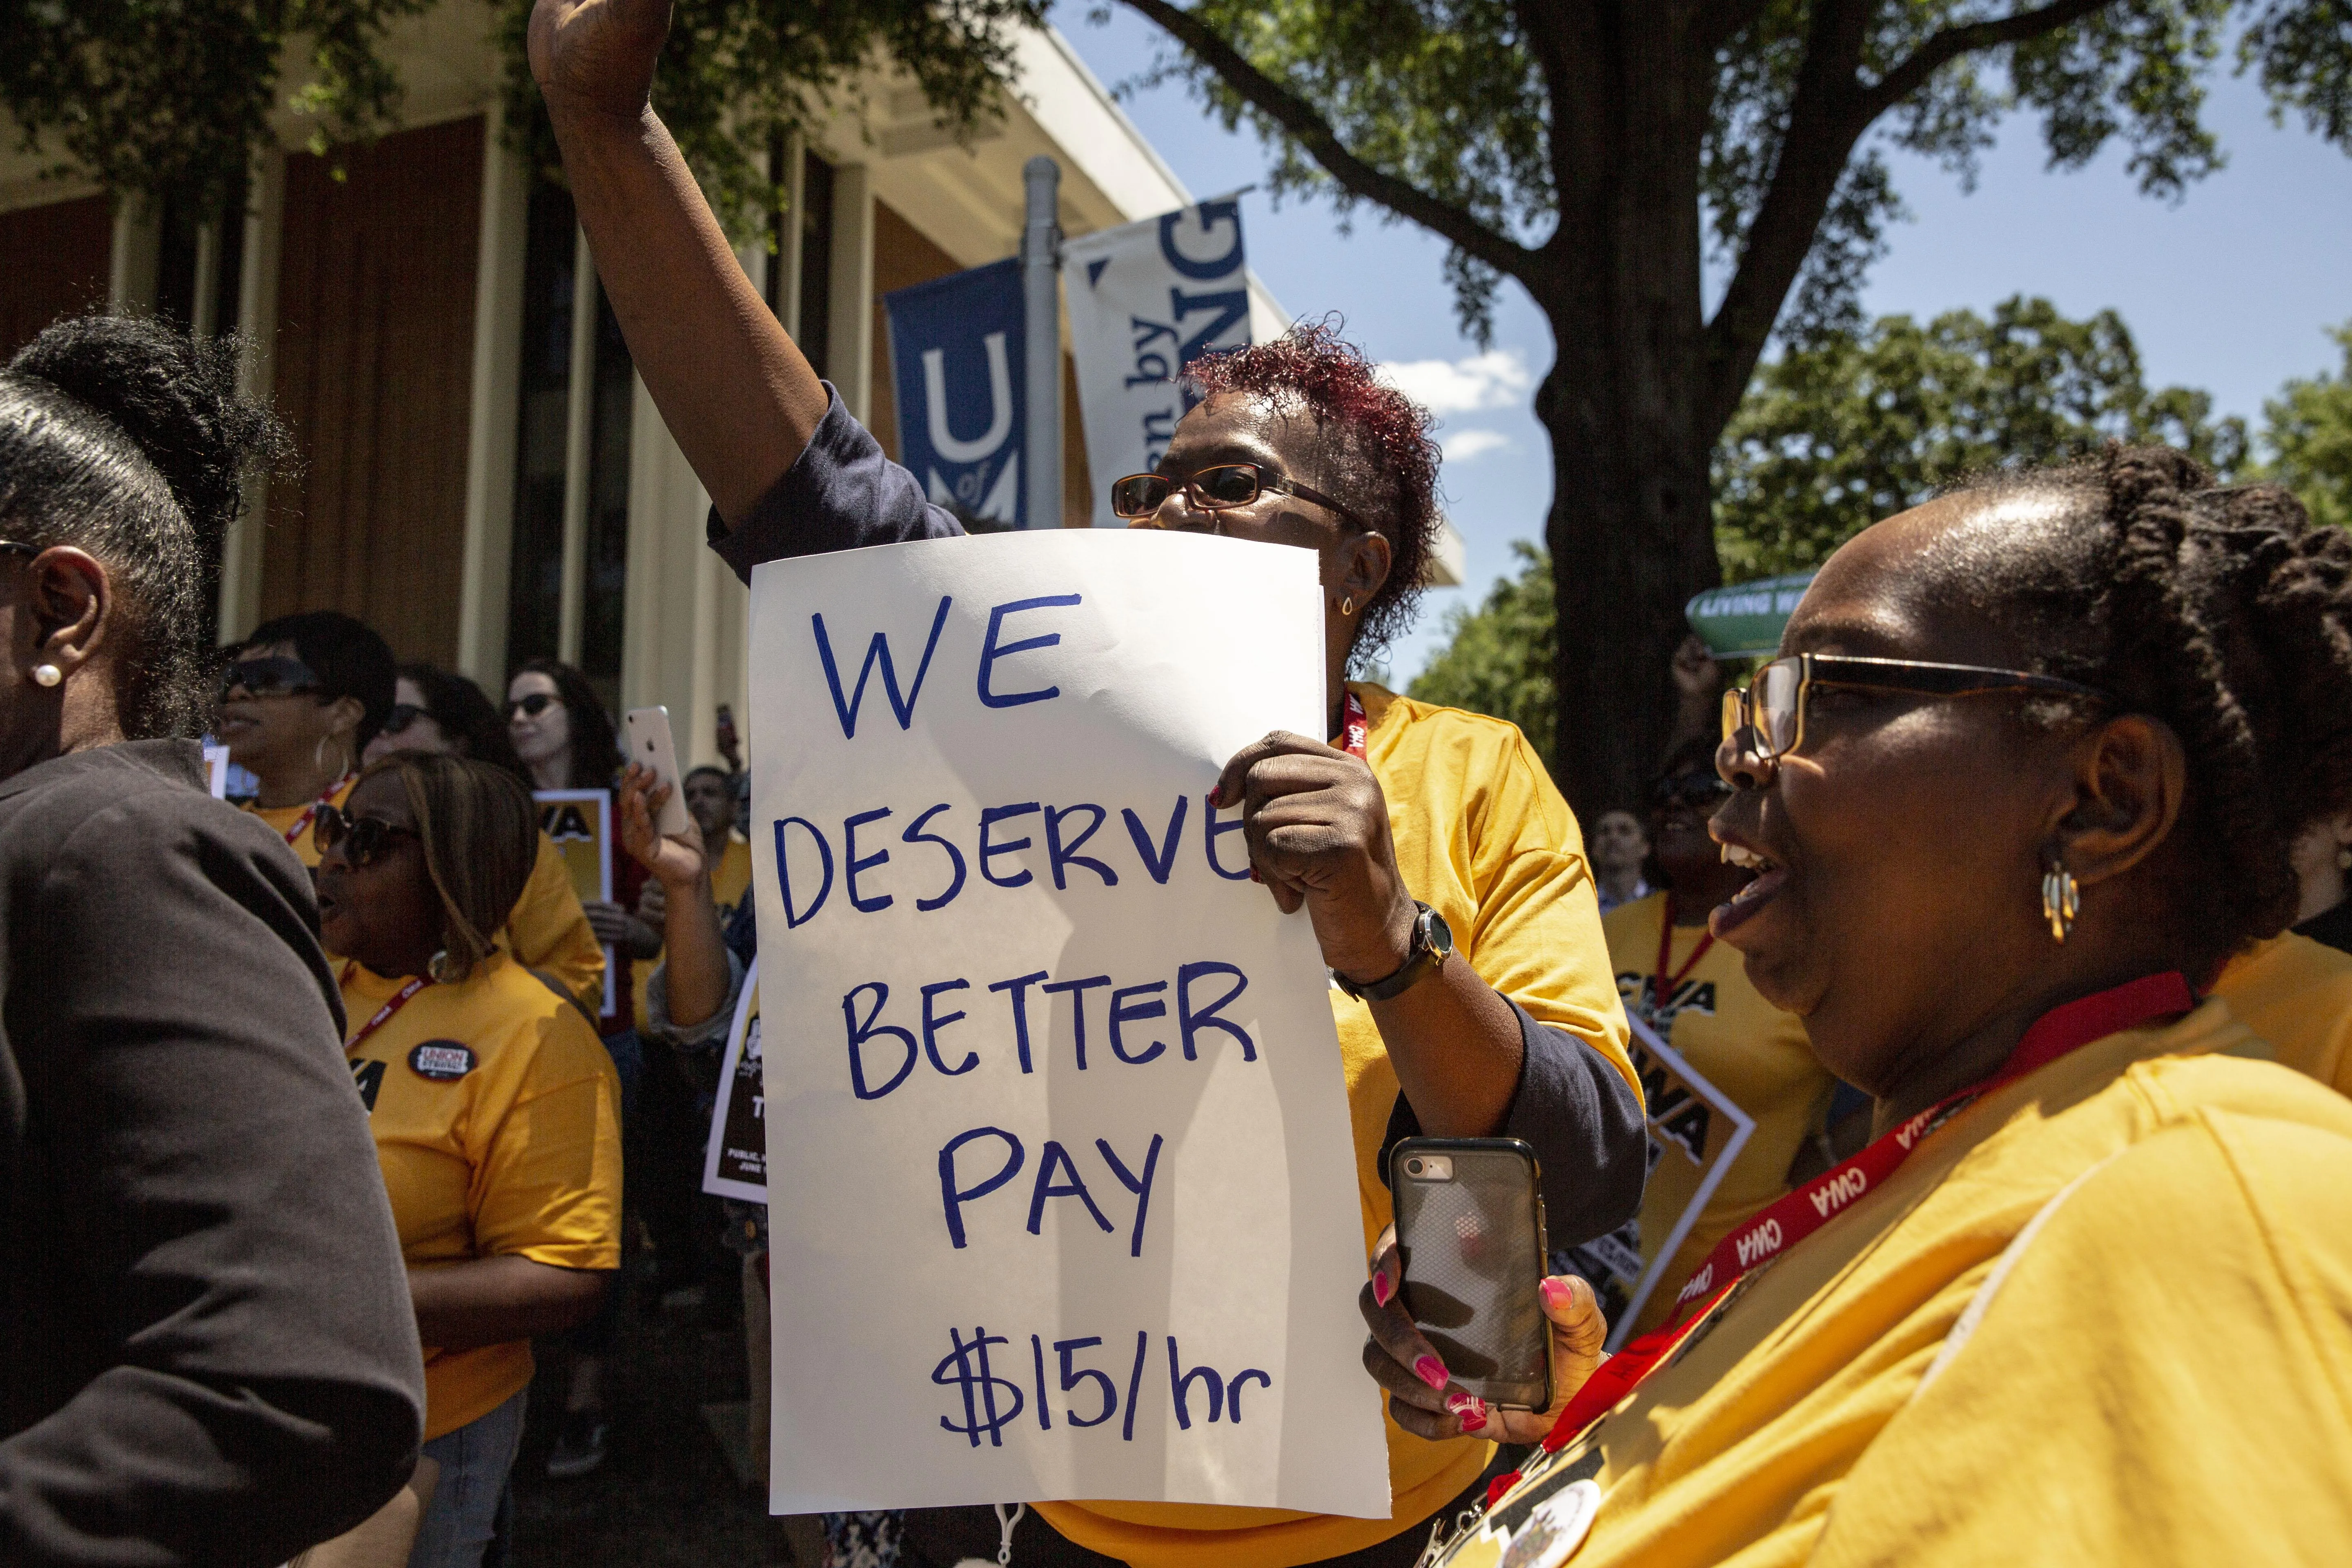 "We Deserve Better Pay" Memphis Public Sector 2019